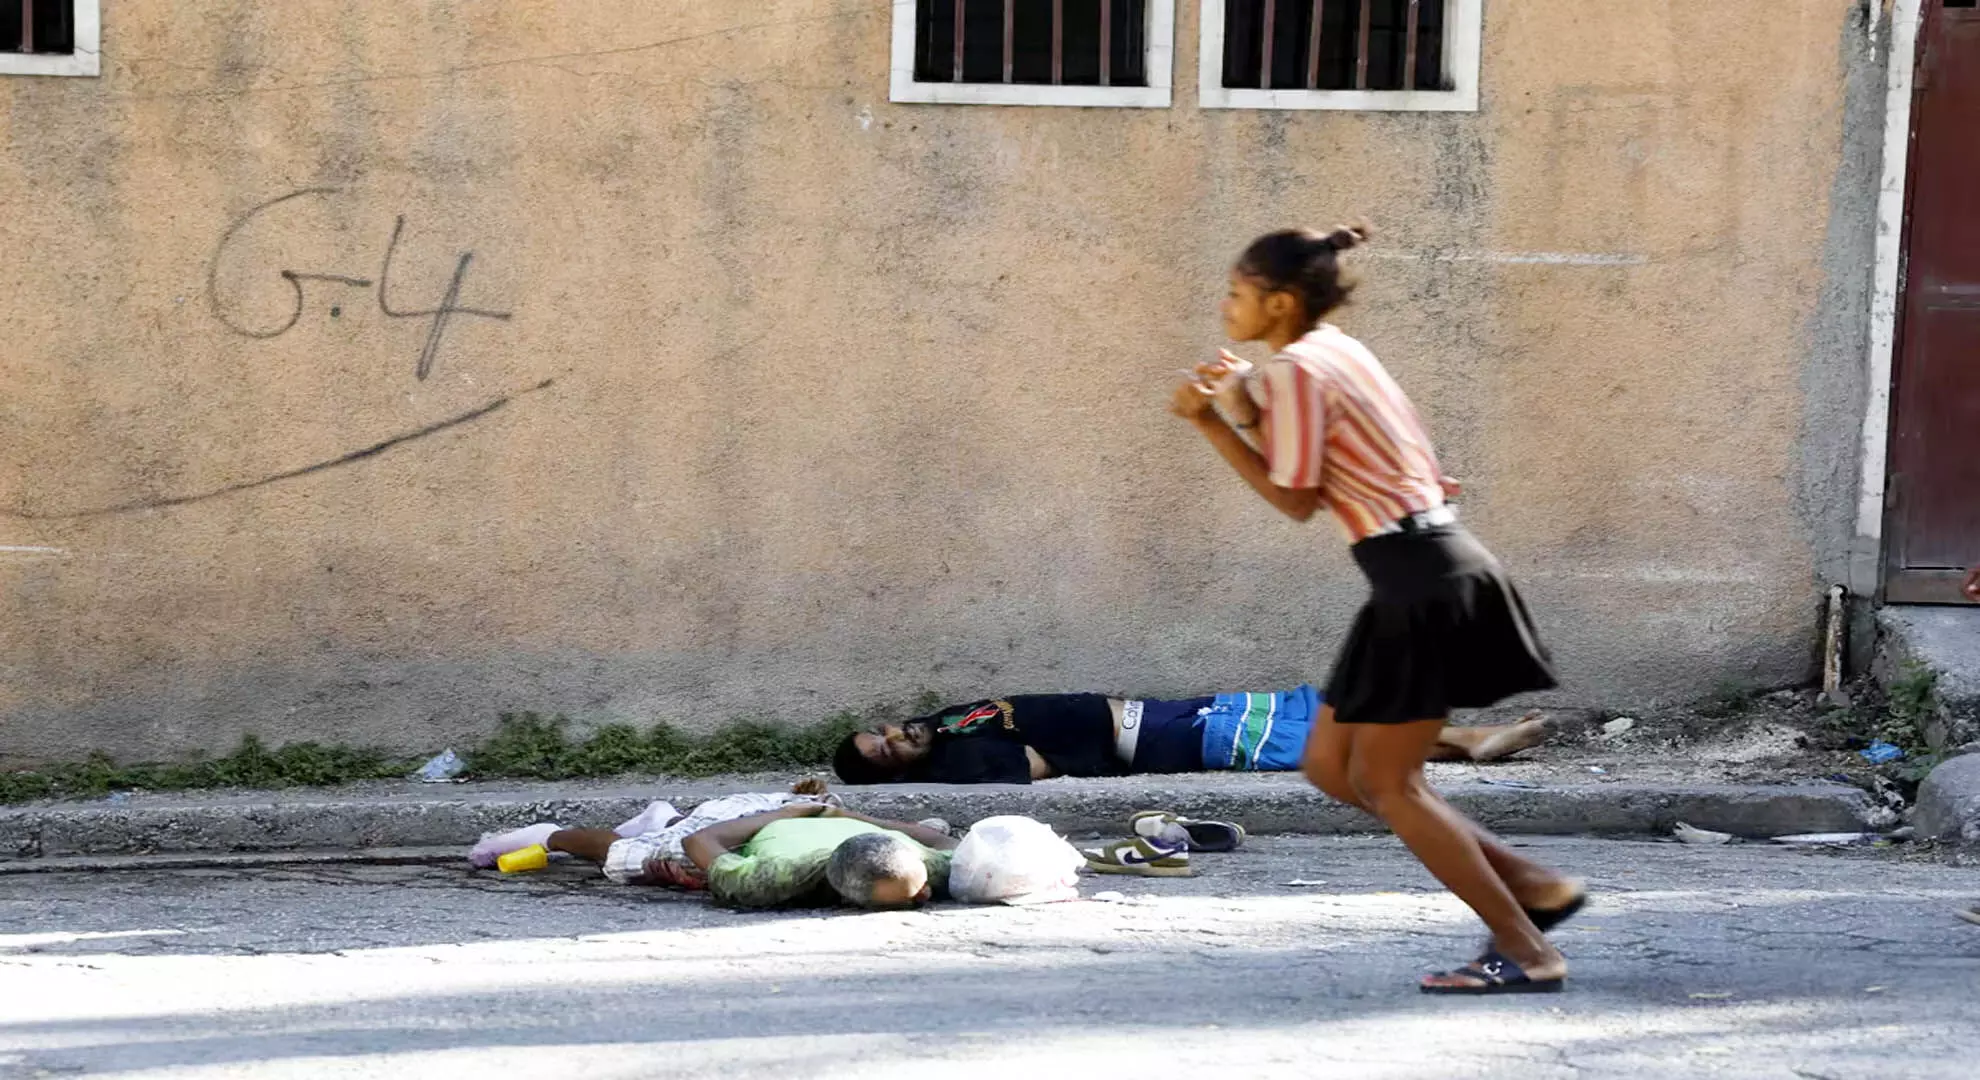 सप्ताहांत की हिंसा और जेल ब्रेक के बाद शांति बहाल करने की कोशिश में हैती ने रात्रिकालीन कर्फ्यू का आदेश दिया